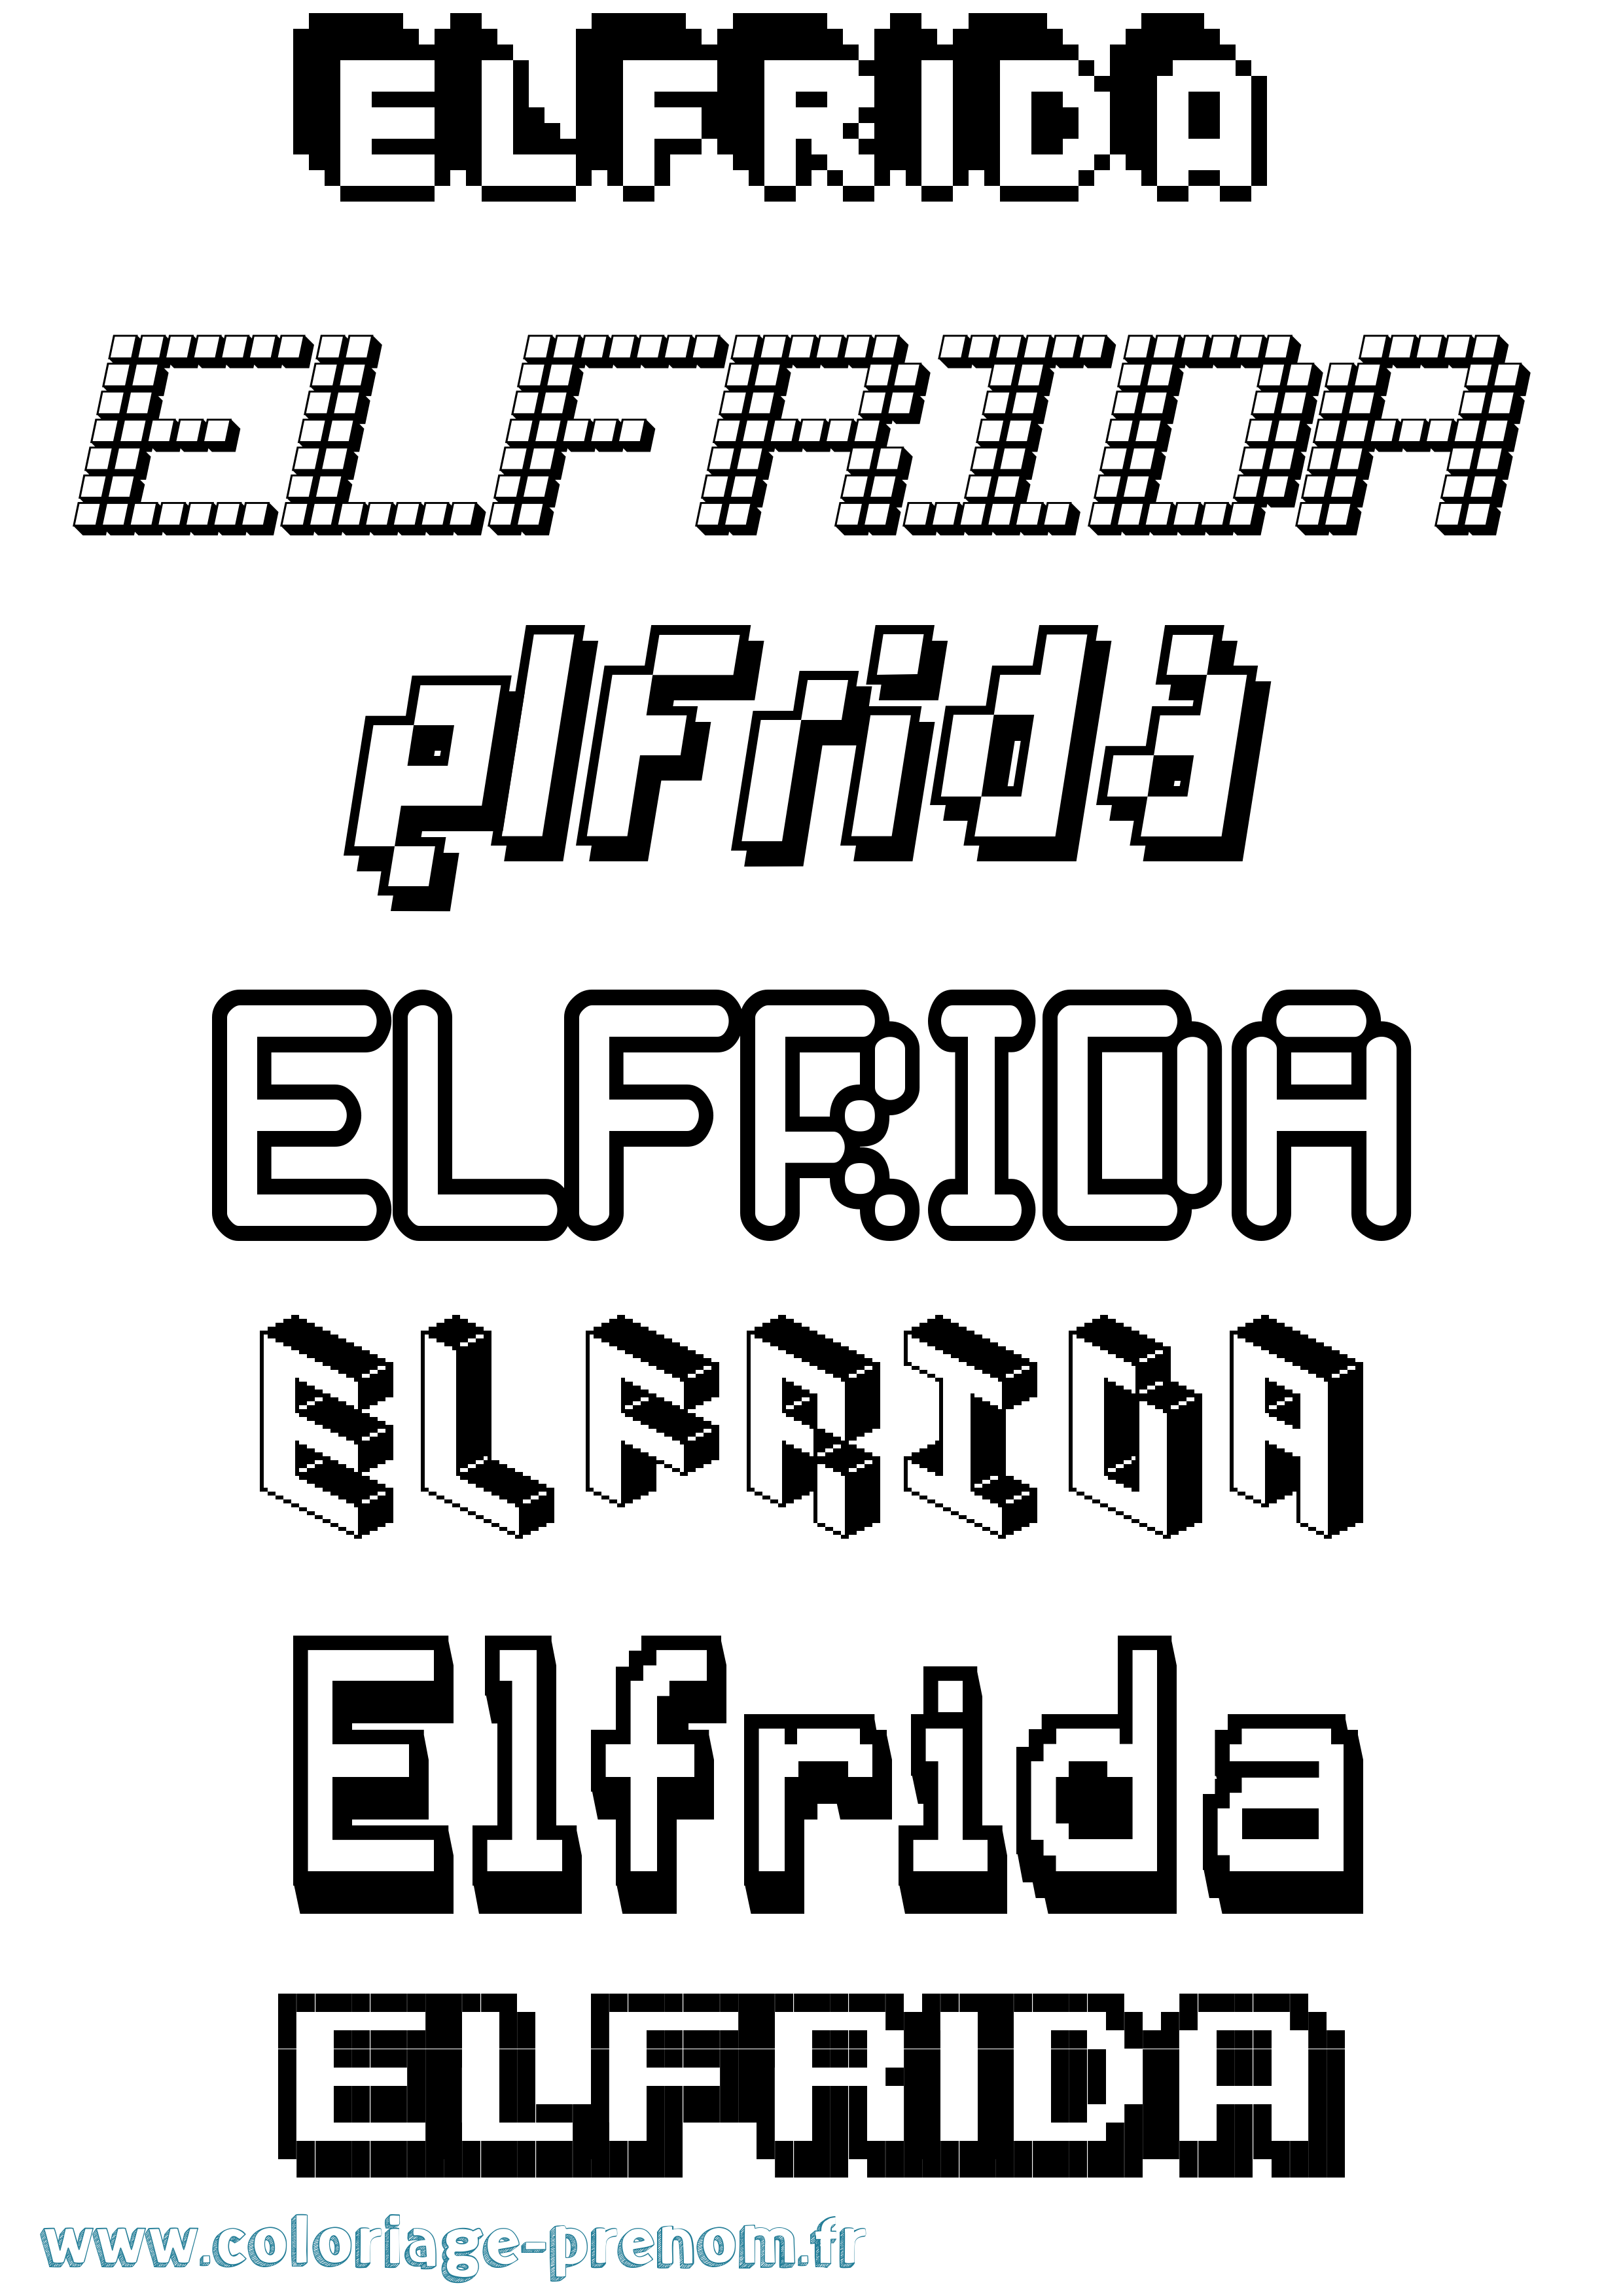 Coloriage prénom Elfrida Pixel